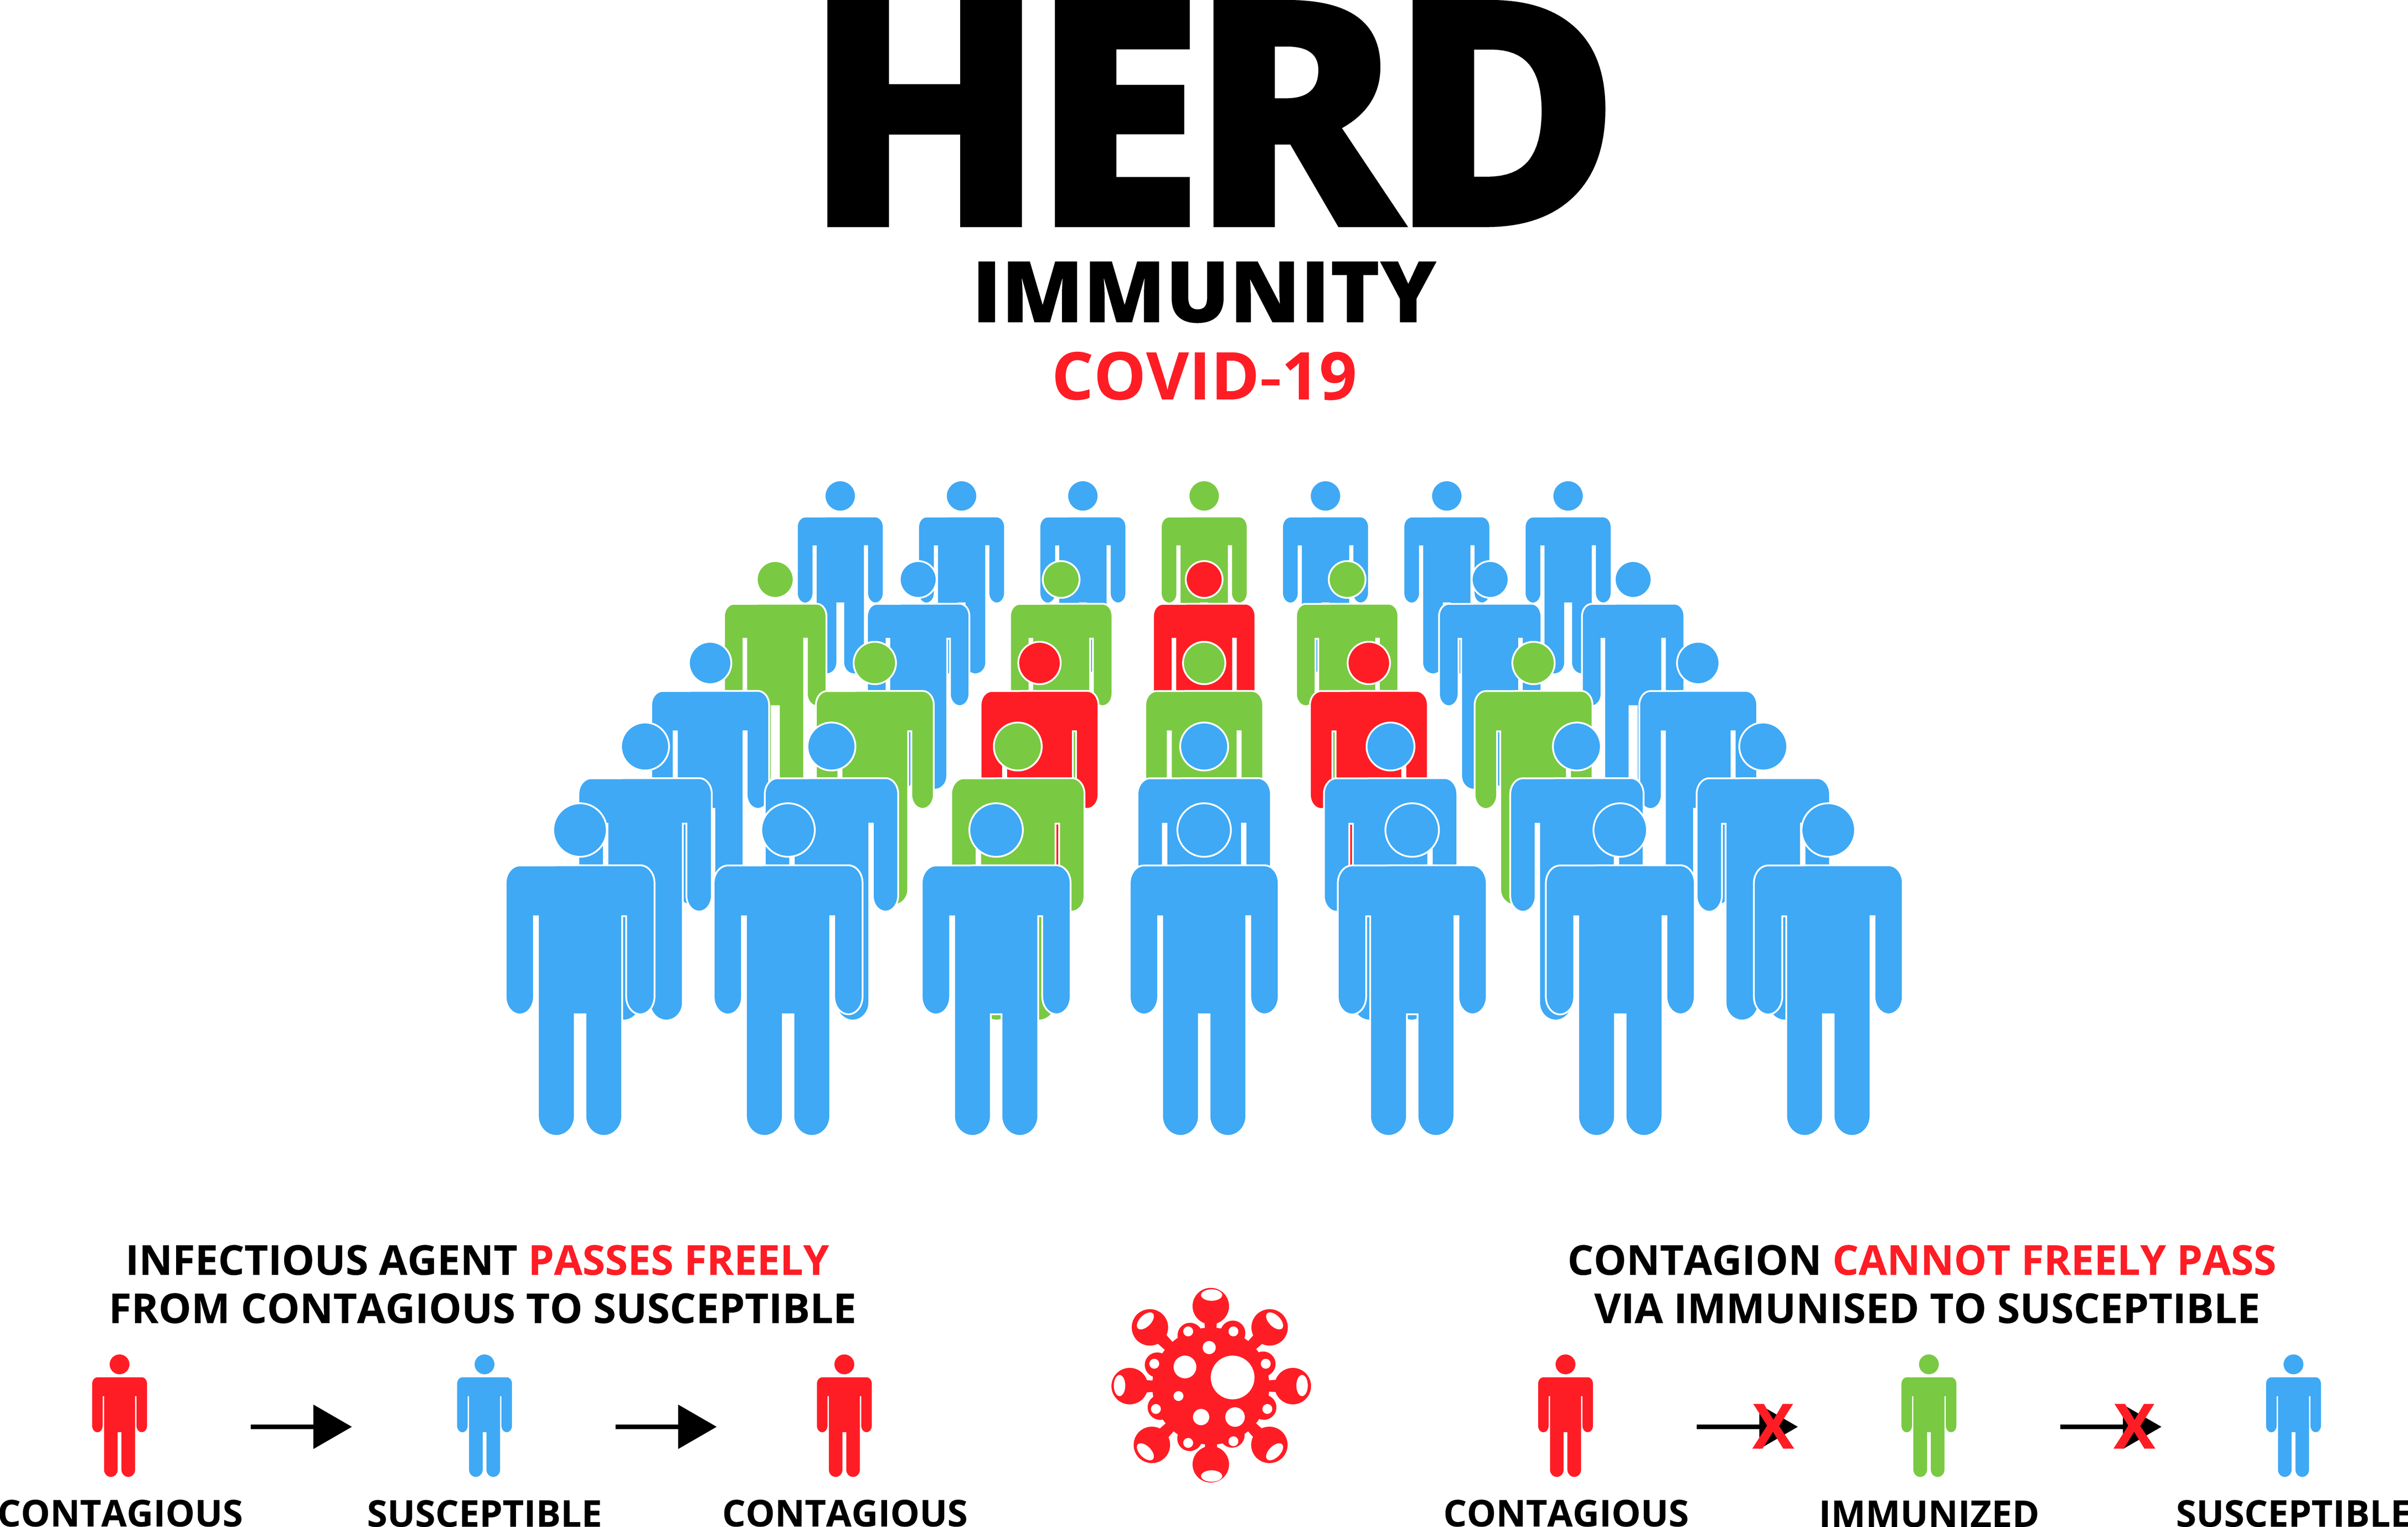 Herd Immunity in India